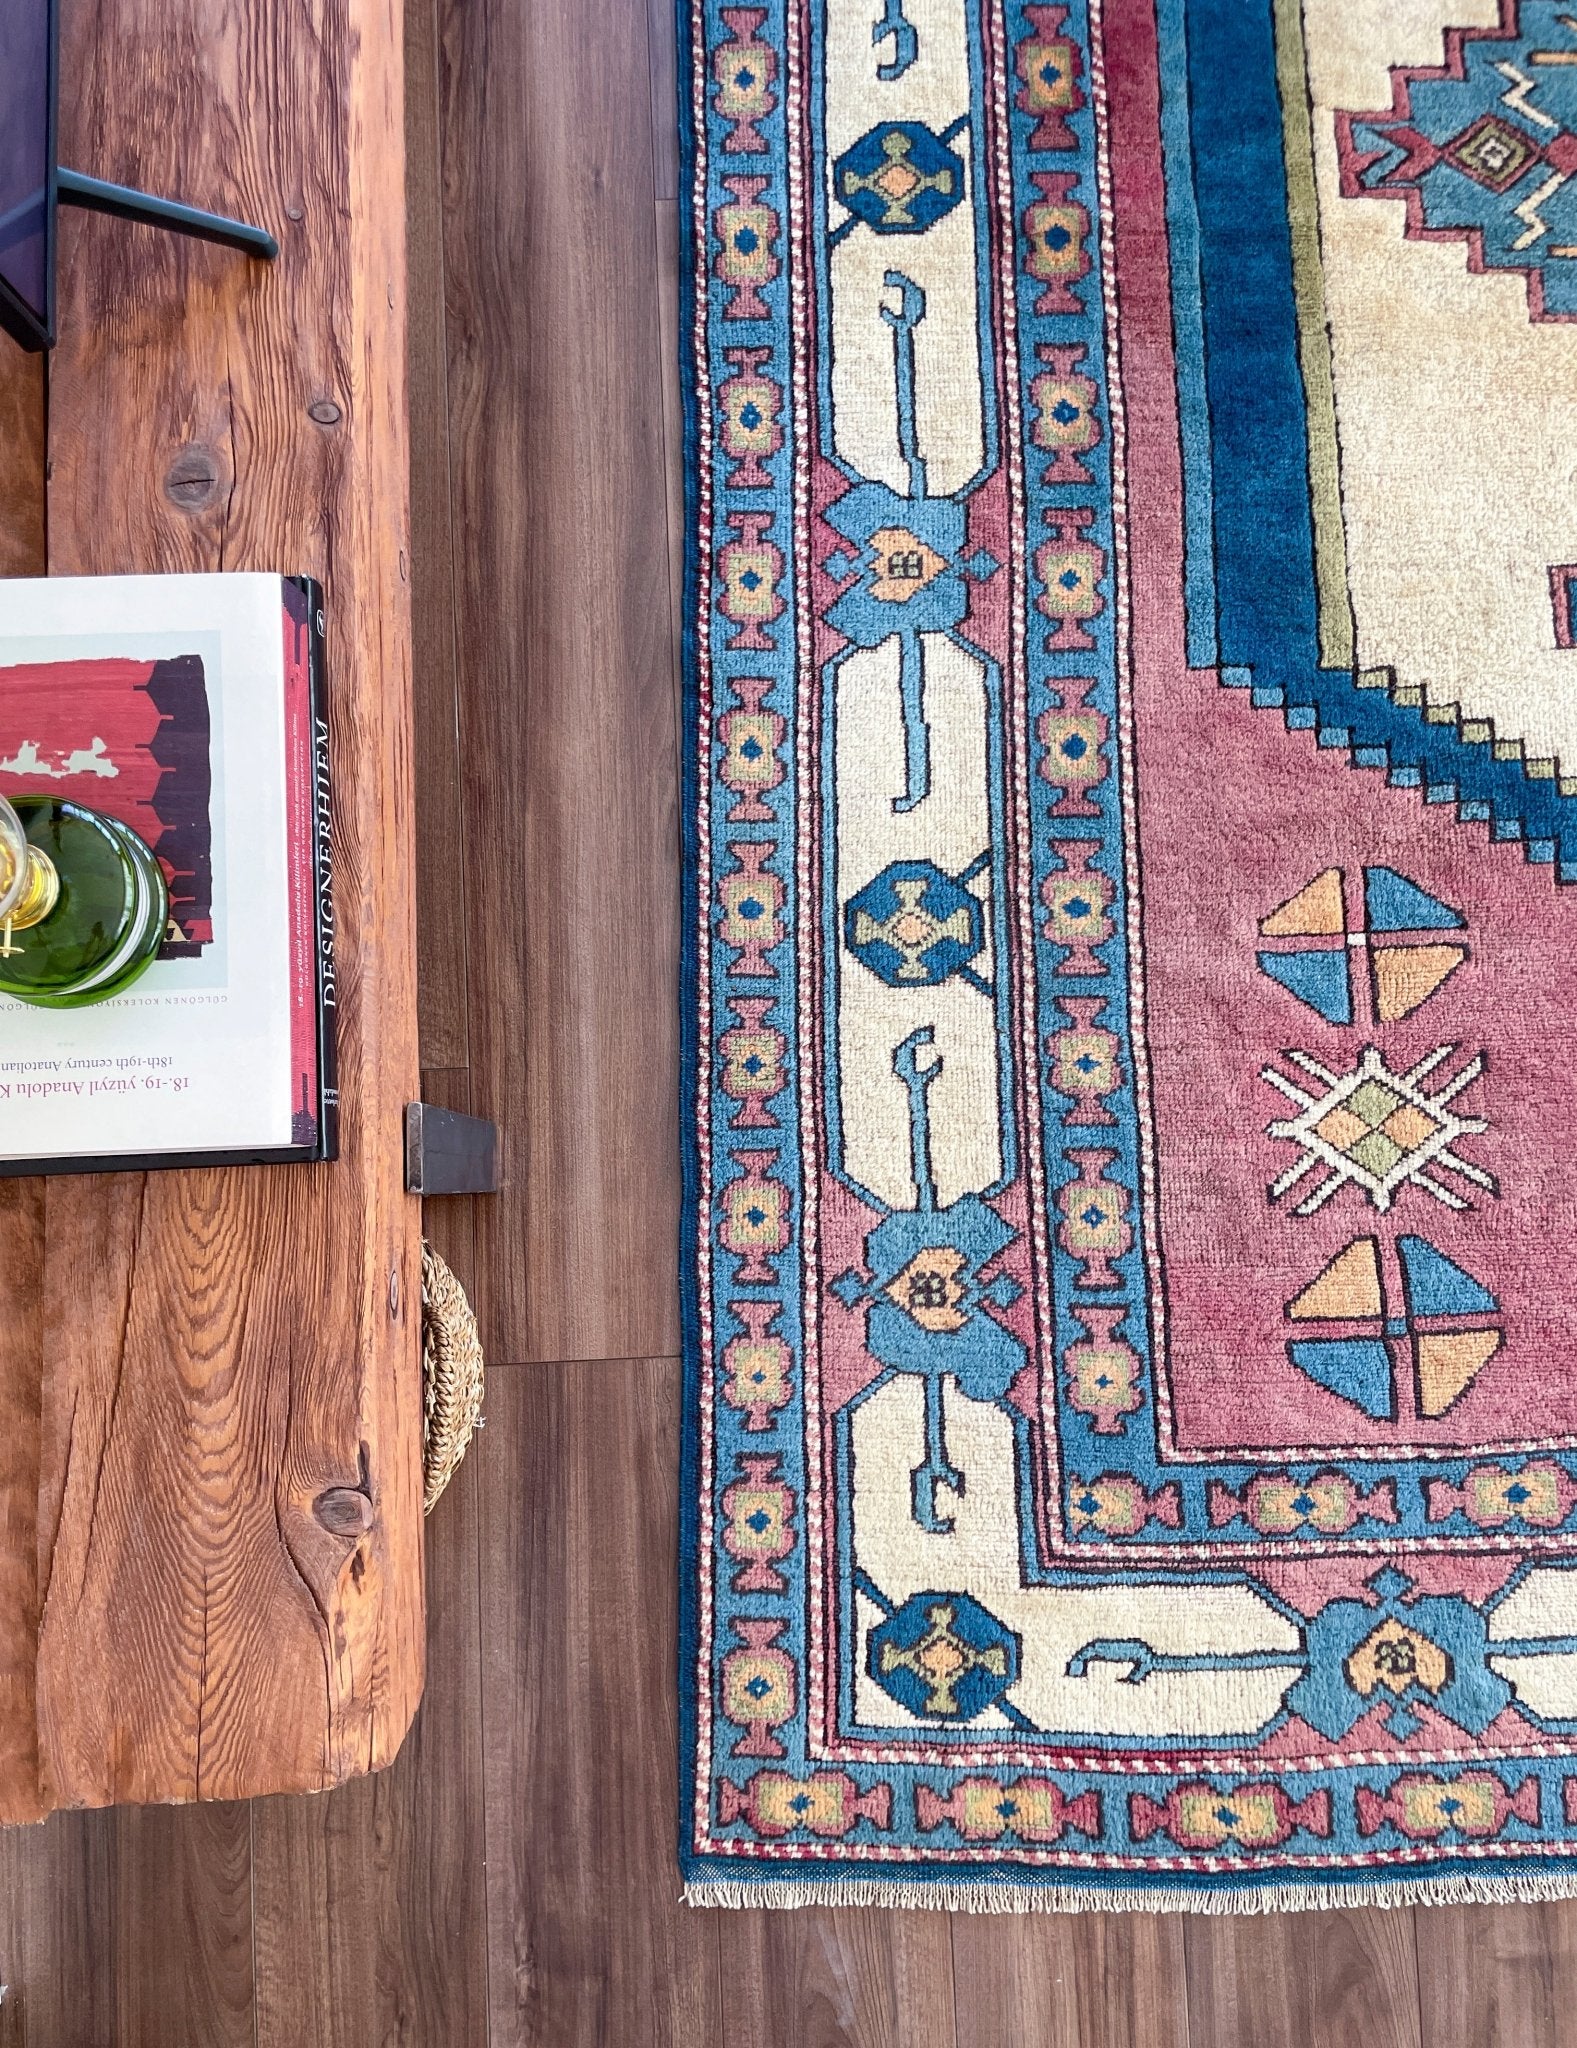 Sultanhani Turkish Rug Shop San francisco bay area. Oriental vintage rug shop berkeley buy rugs online toronto canada